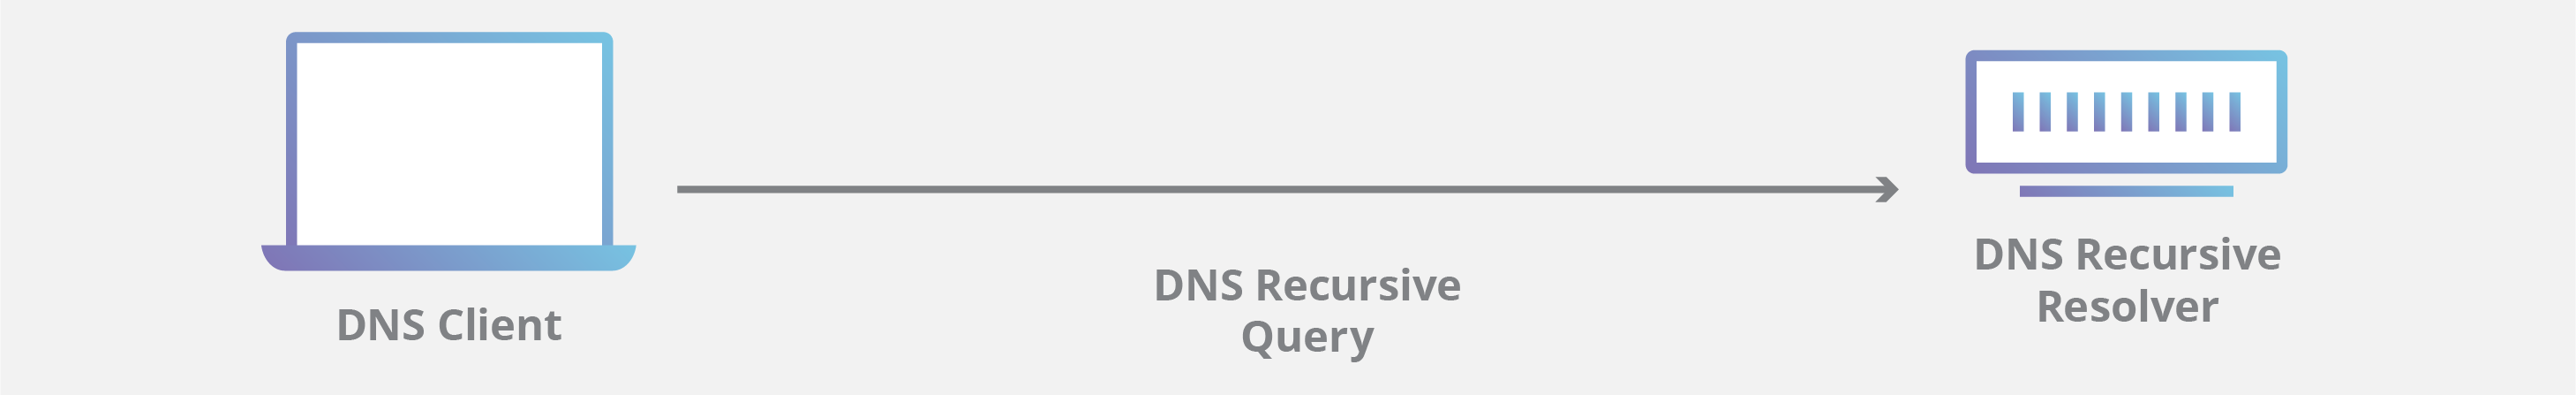 Diagrama de consulta DNS